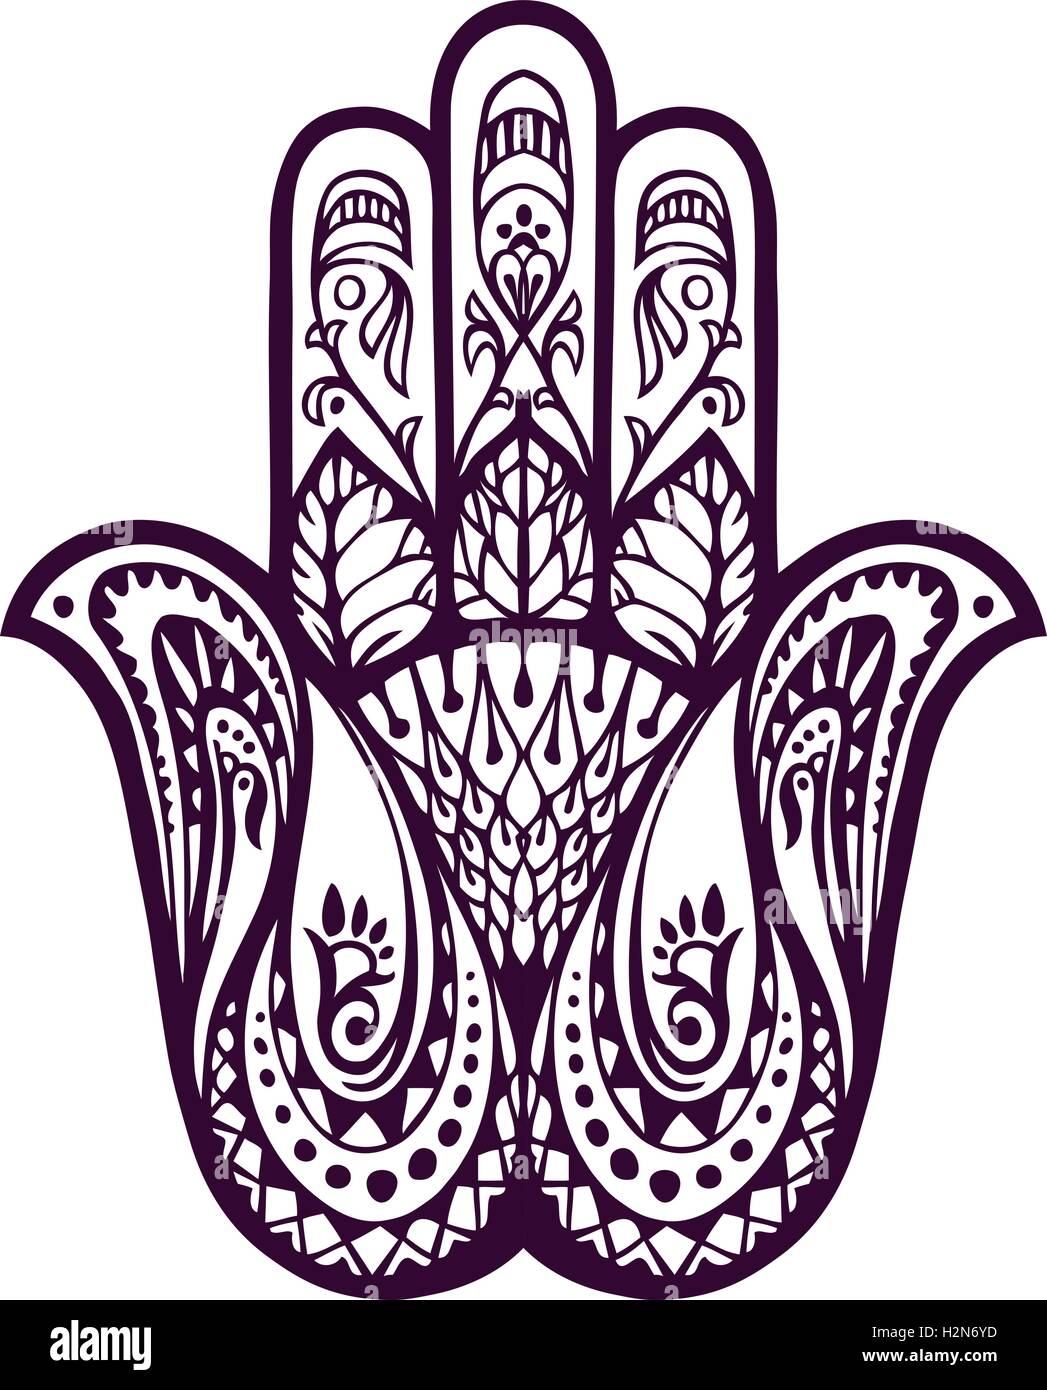 Gezeichnete Hamsa Hand oder von Fatima. Vektor-Illustration mit ethnischen und floralen Ornamenten Stock Vektor